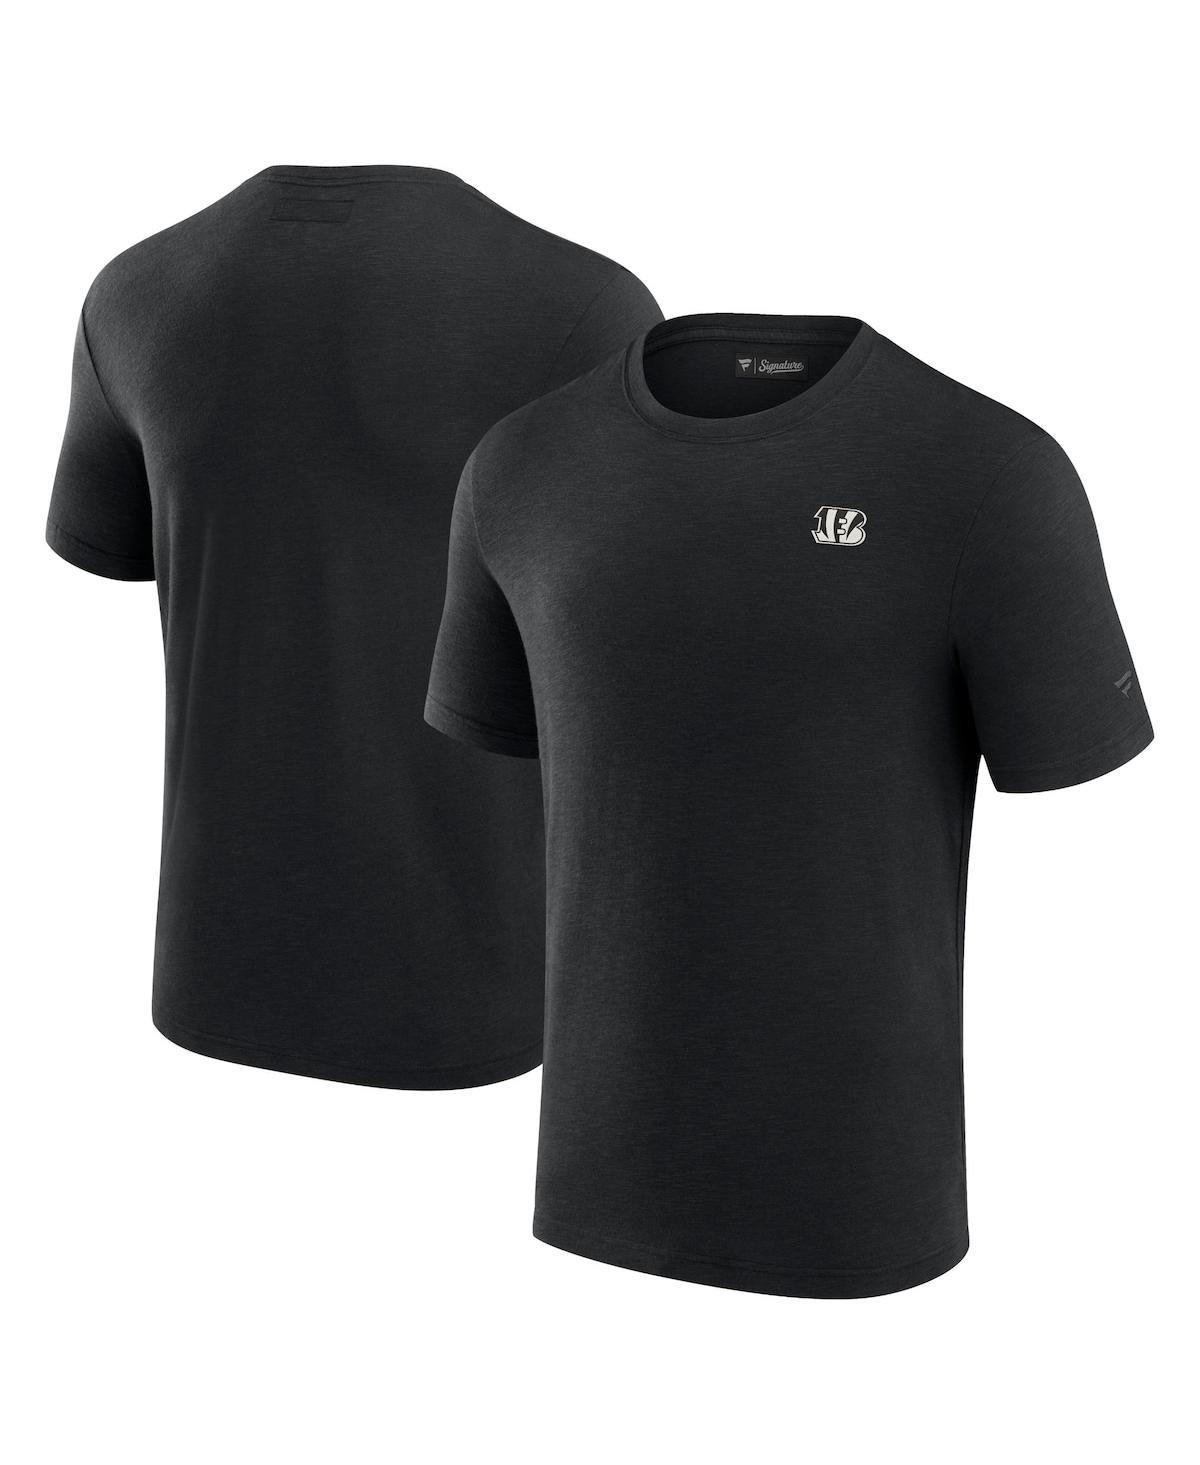 Men's Fanatics Signature Black Cincinnati Bengals Modal Short Sleeve T-shirt - Black